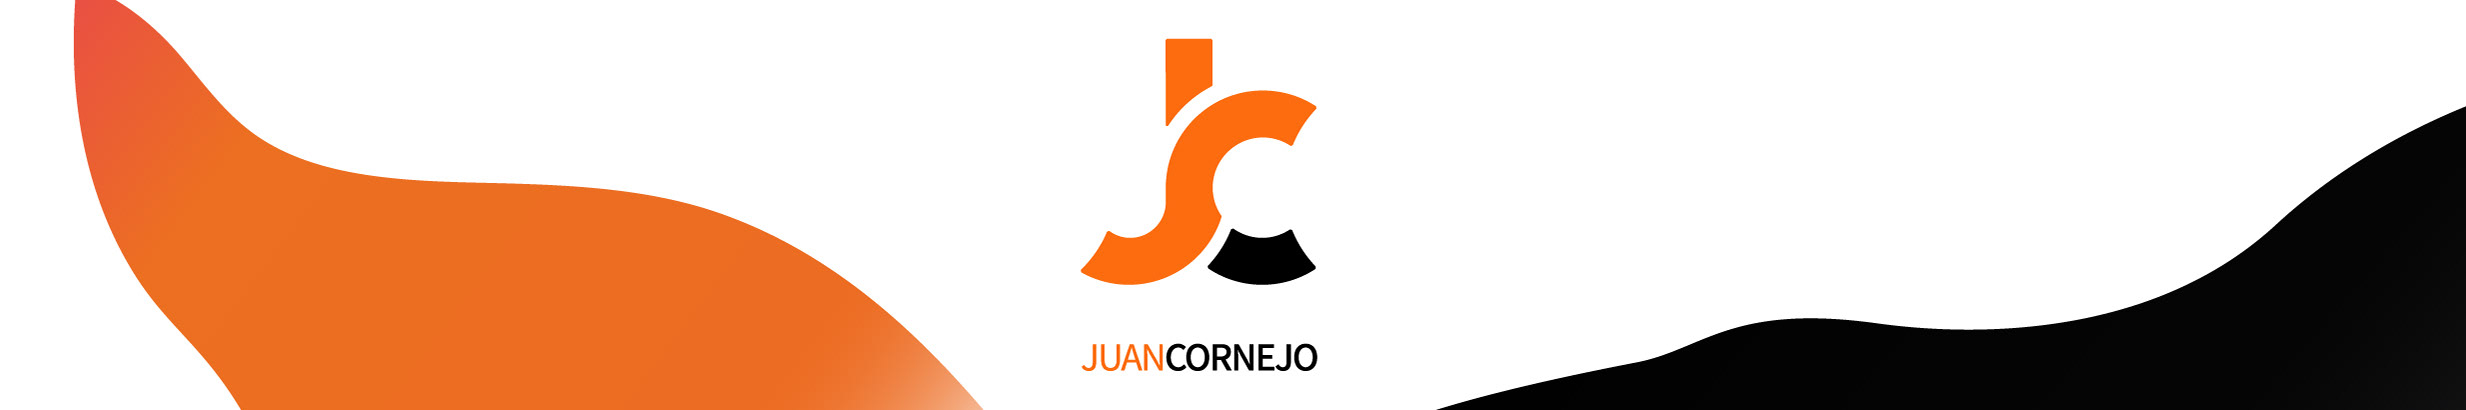 Juan Cornejo's profile banner